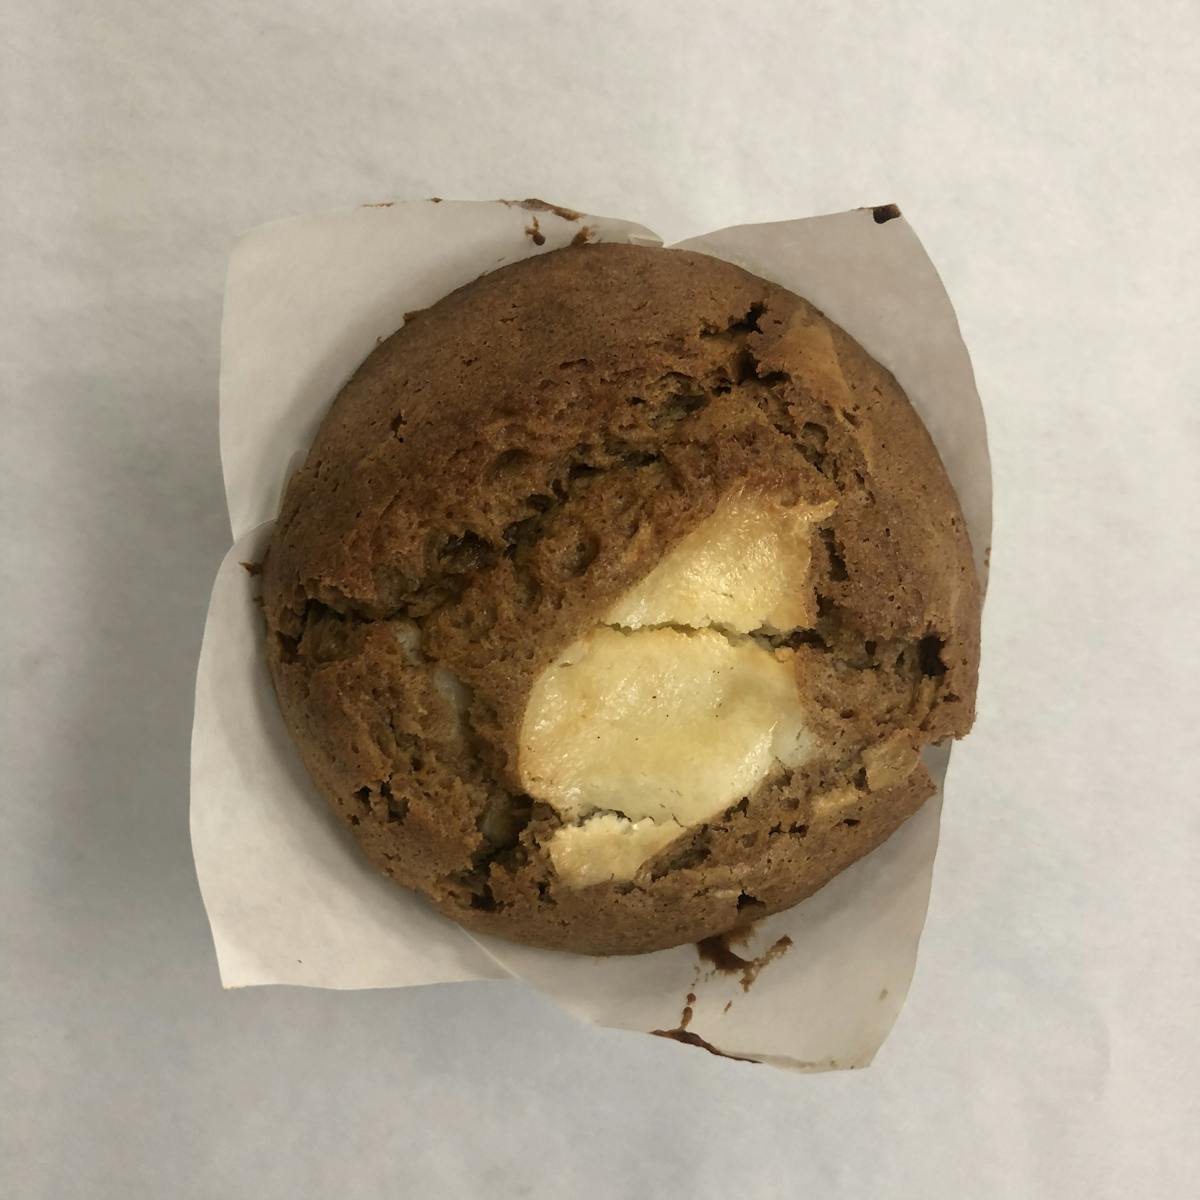 a muffin